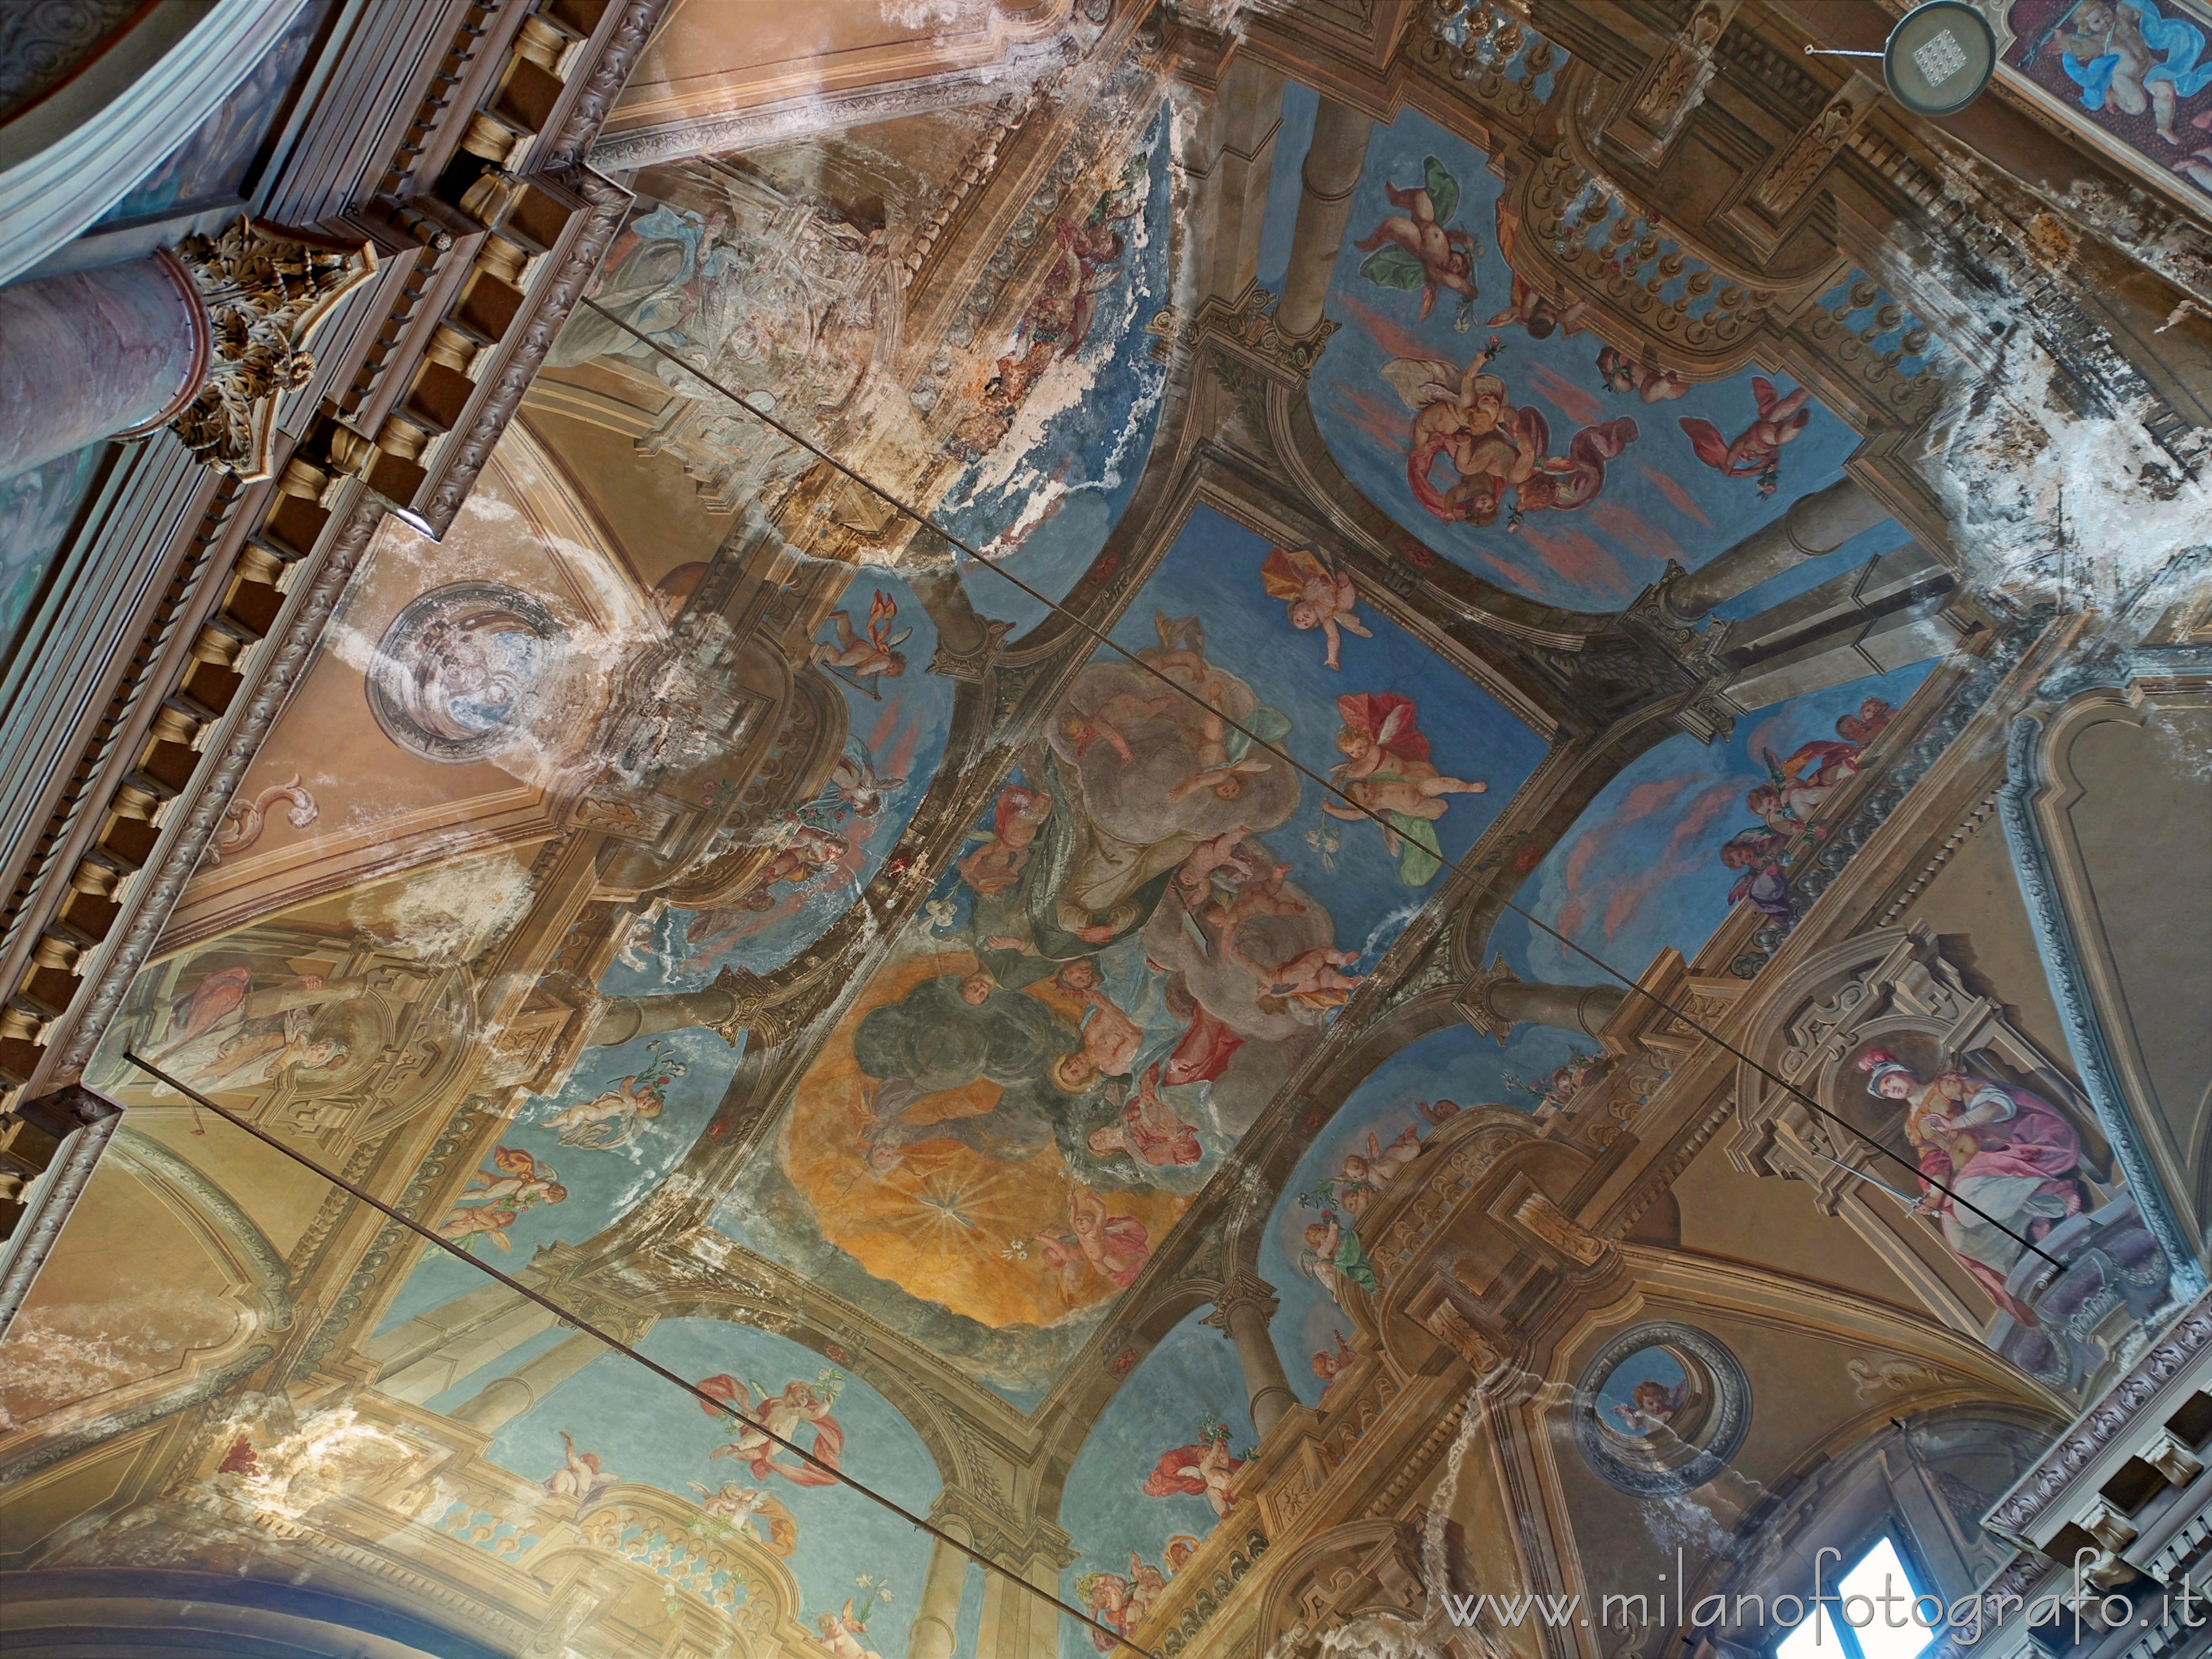 Novara (Italy): Ceiling of the Church of San Pietro al Rosario - Novara (Italy)